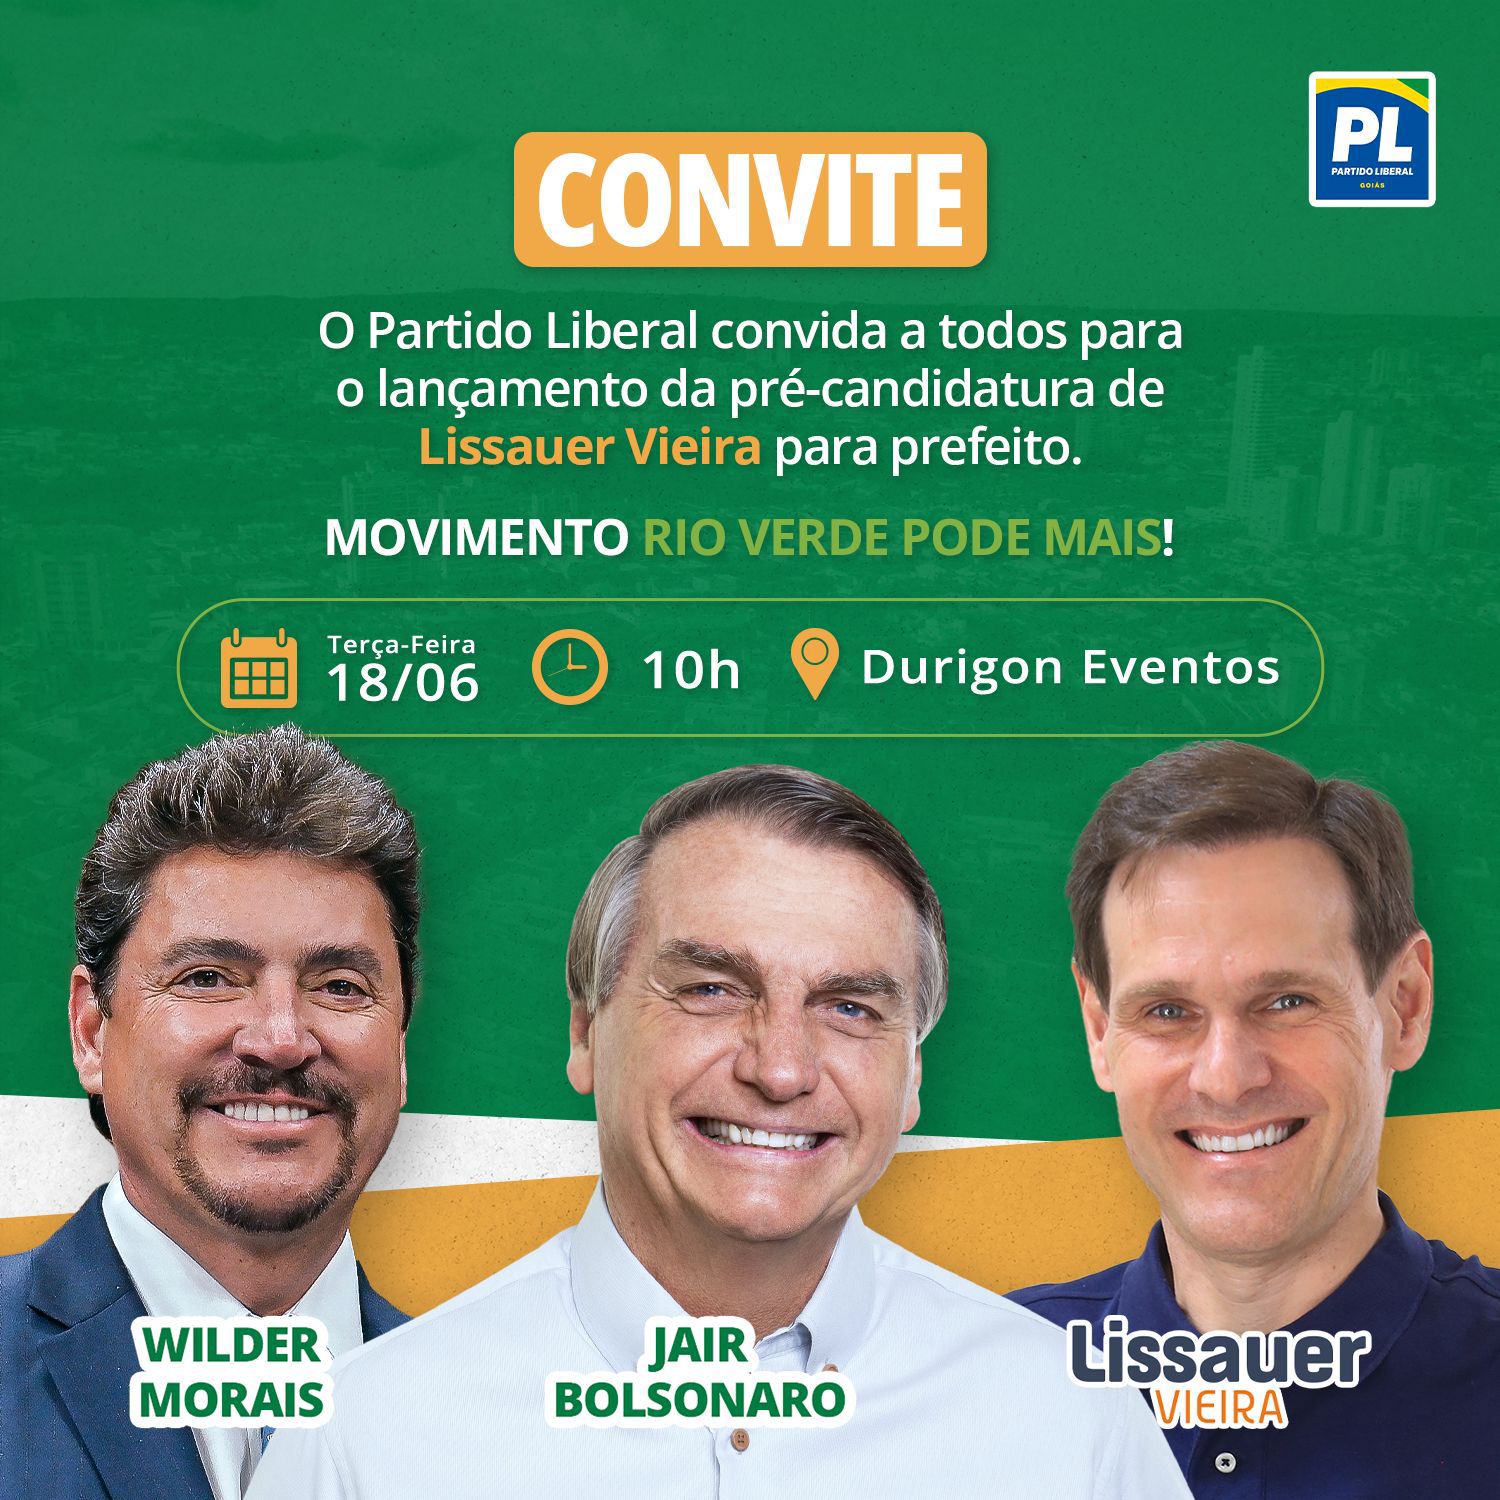 Convite para reunião política com a presença do ex-presidente Bolsonaro